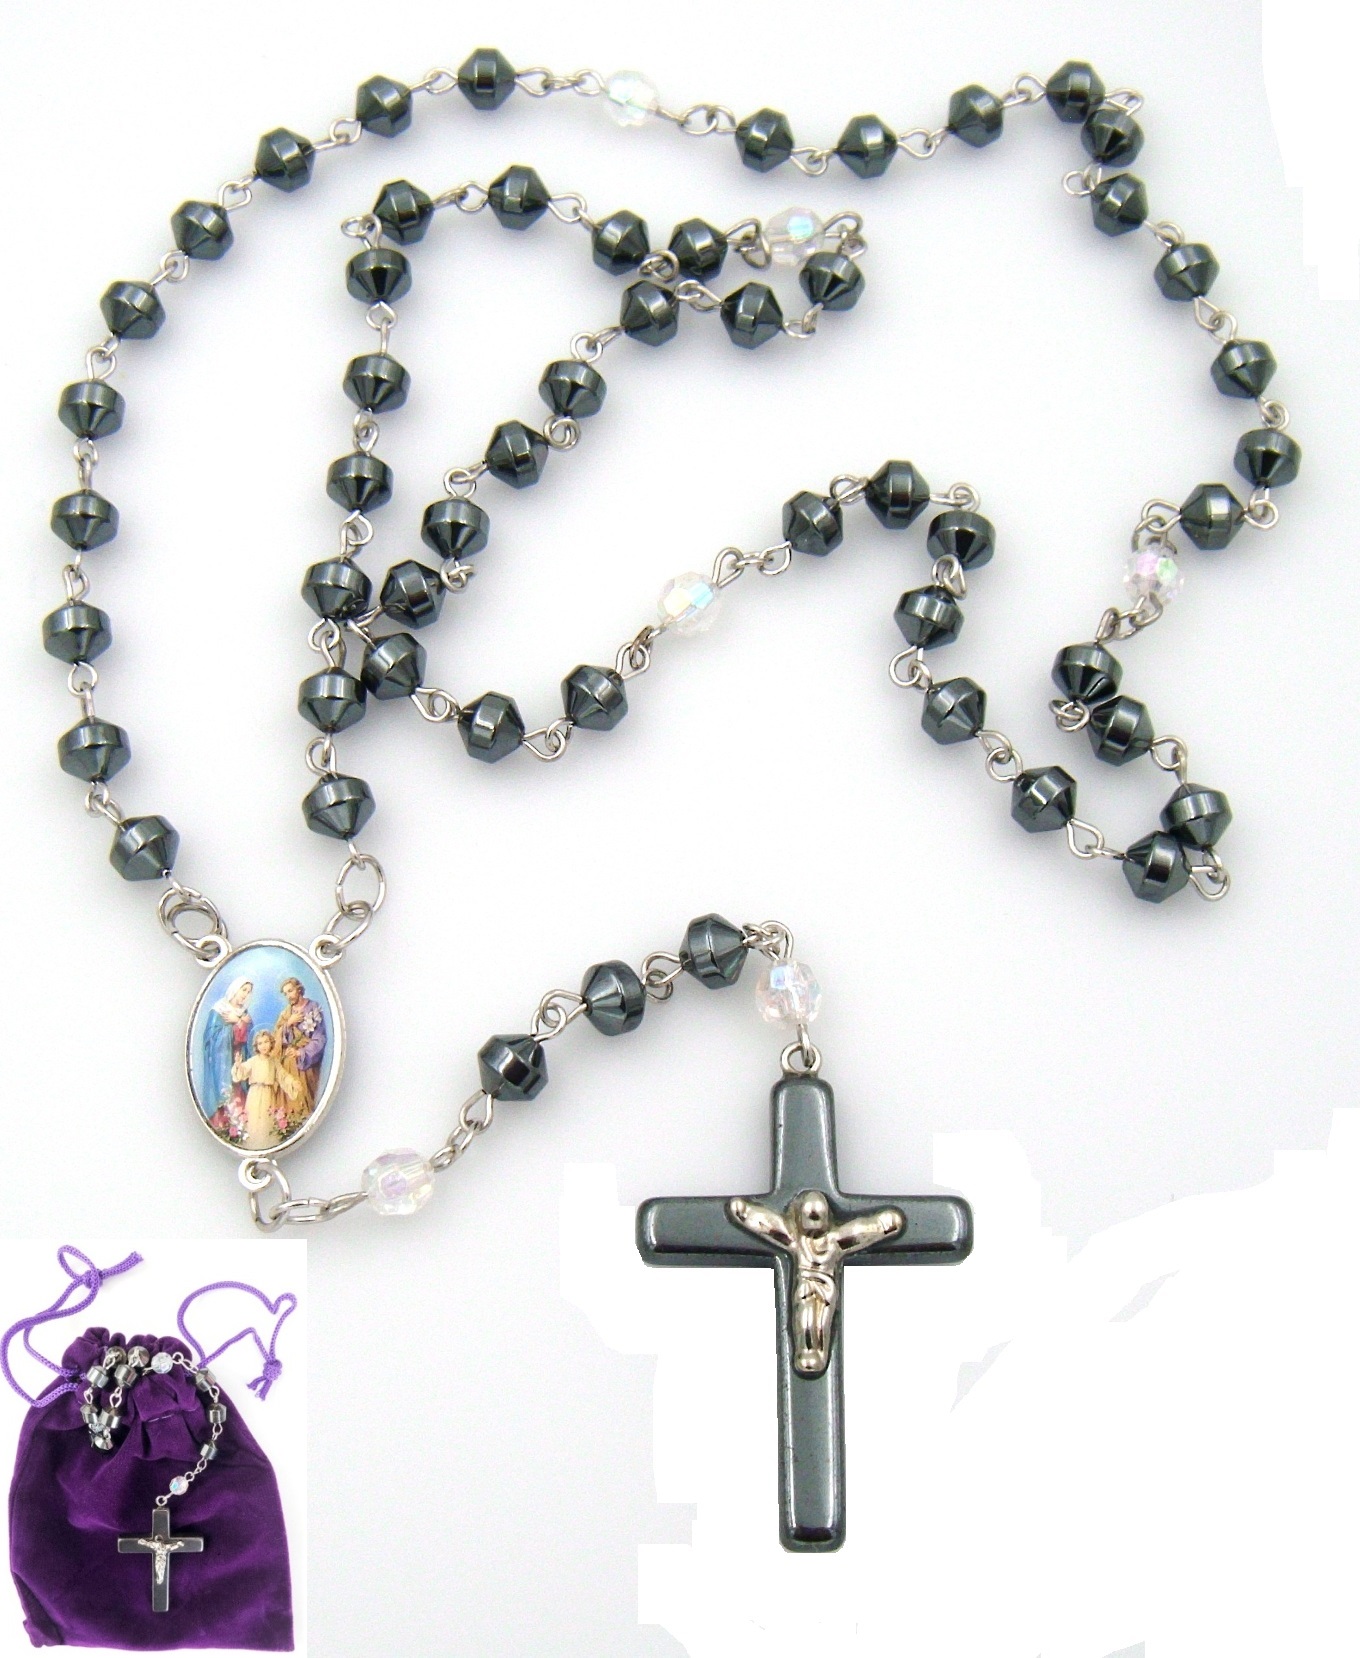 1 PC. Holy Family AB Crystal Hematite Rosary Prayers Rosary